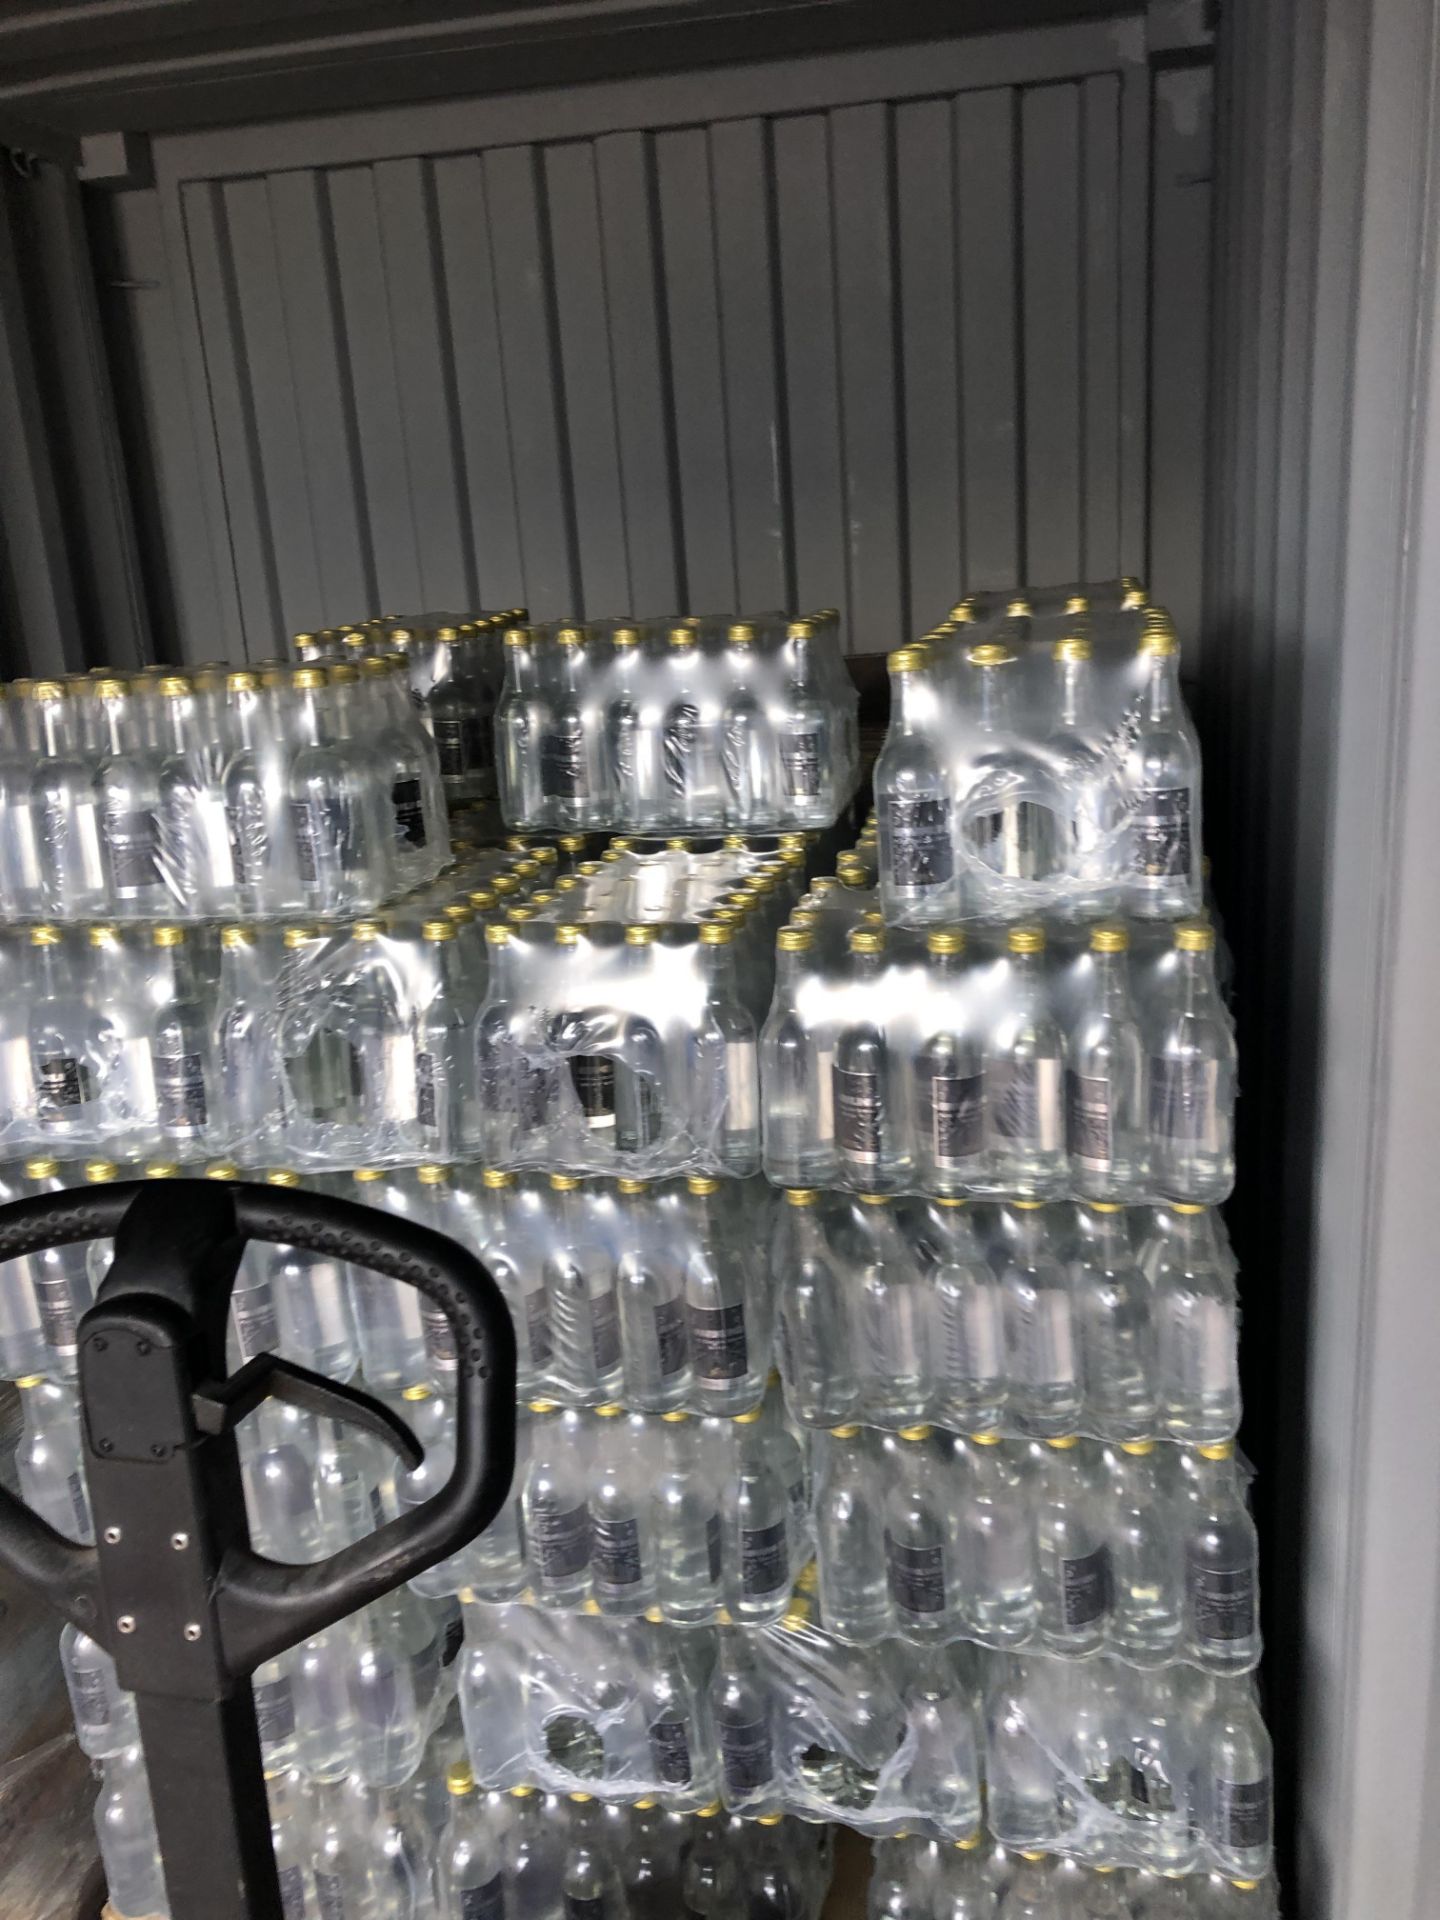 Brexit Beverages Celebration Glass Bottled Sparkling Water1 Pallet = 40Cases